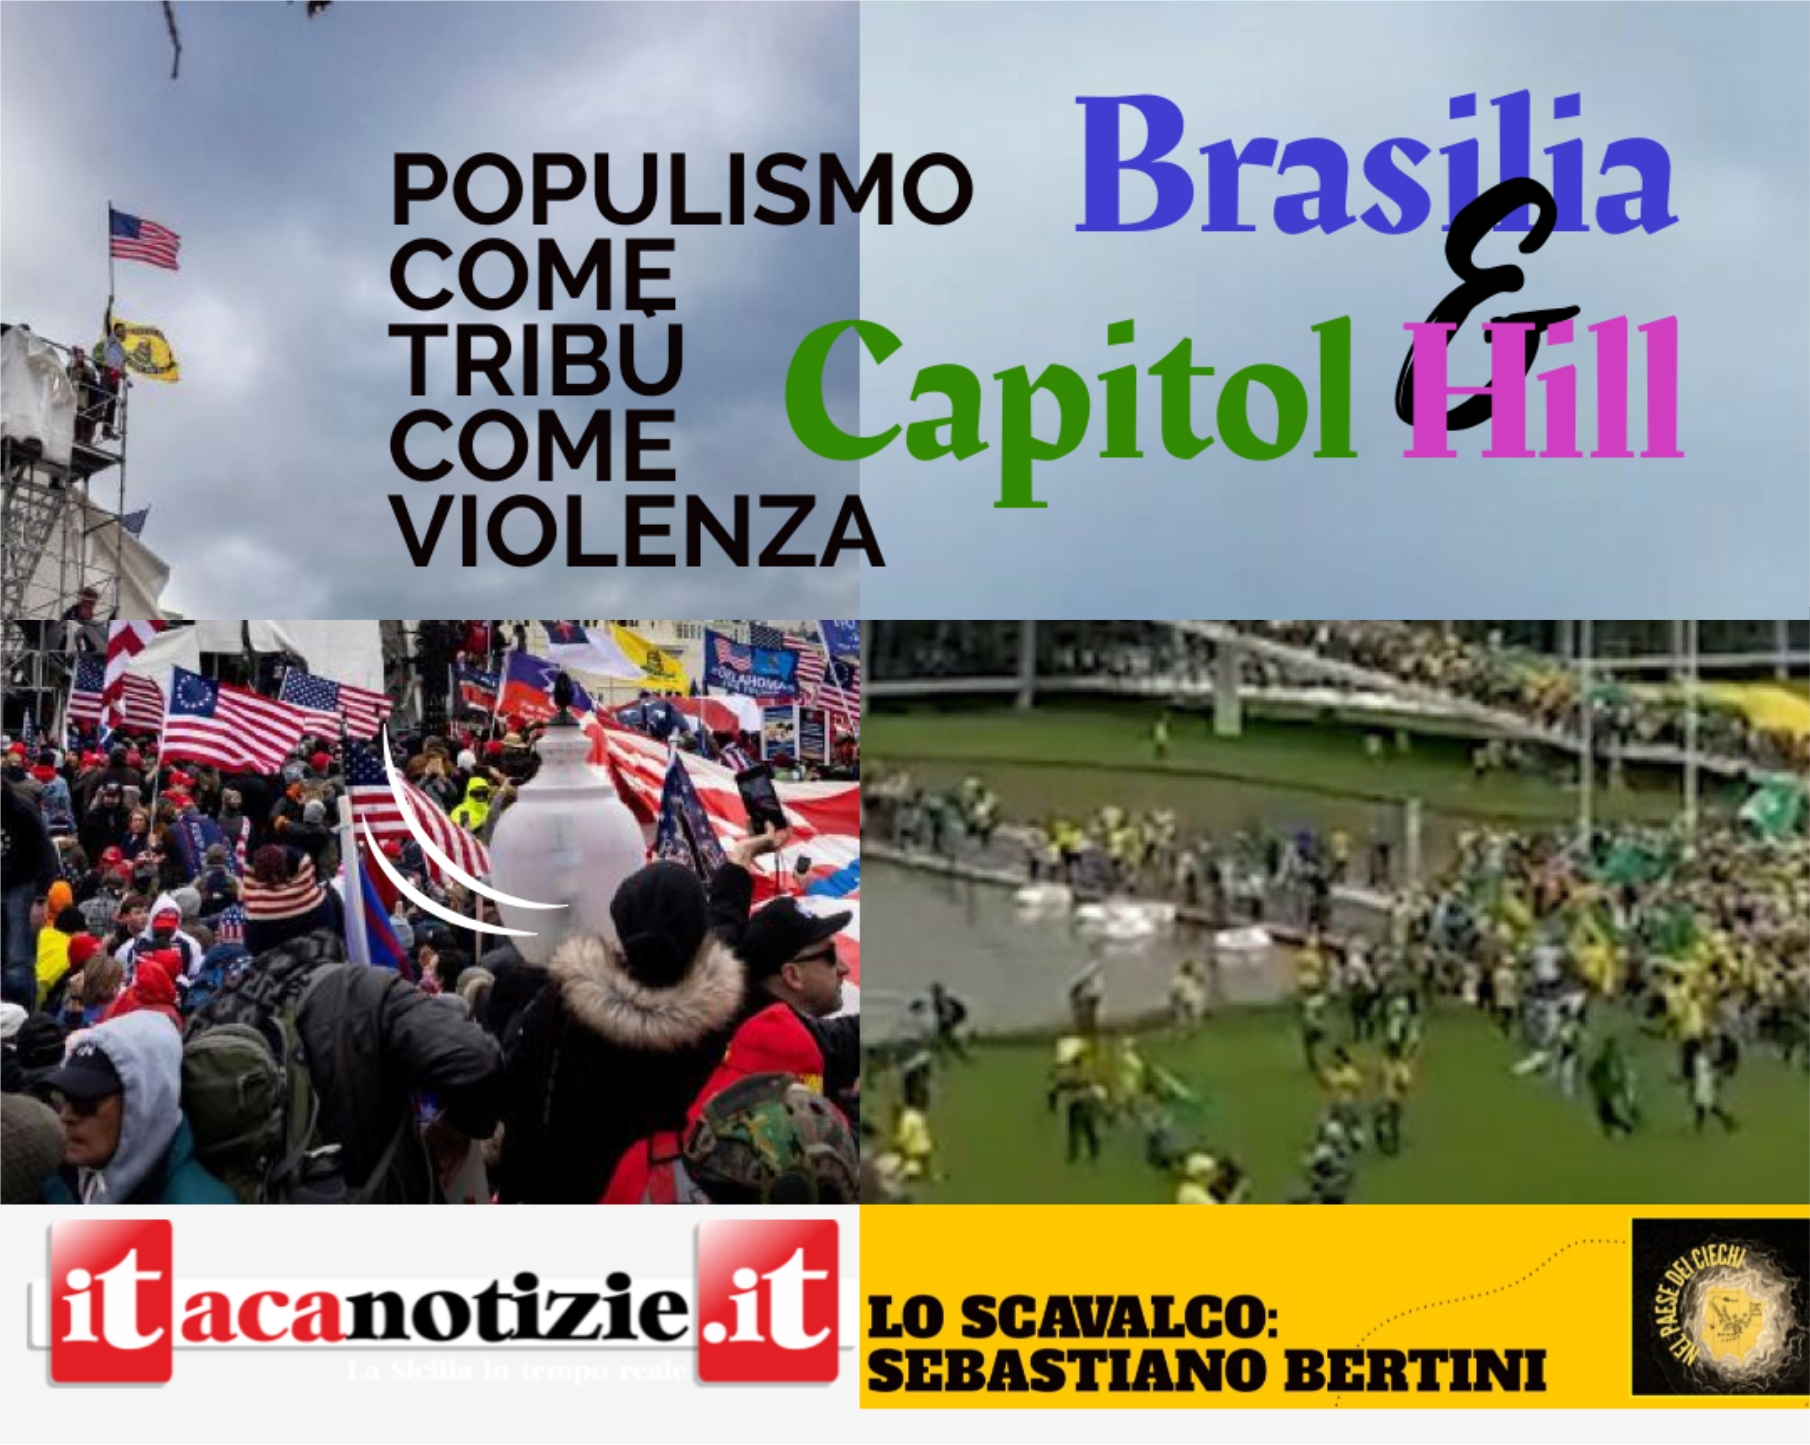 Brasilia e Capitol Hill: Populismo, come Tribù, come Violenza